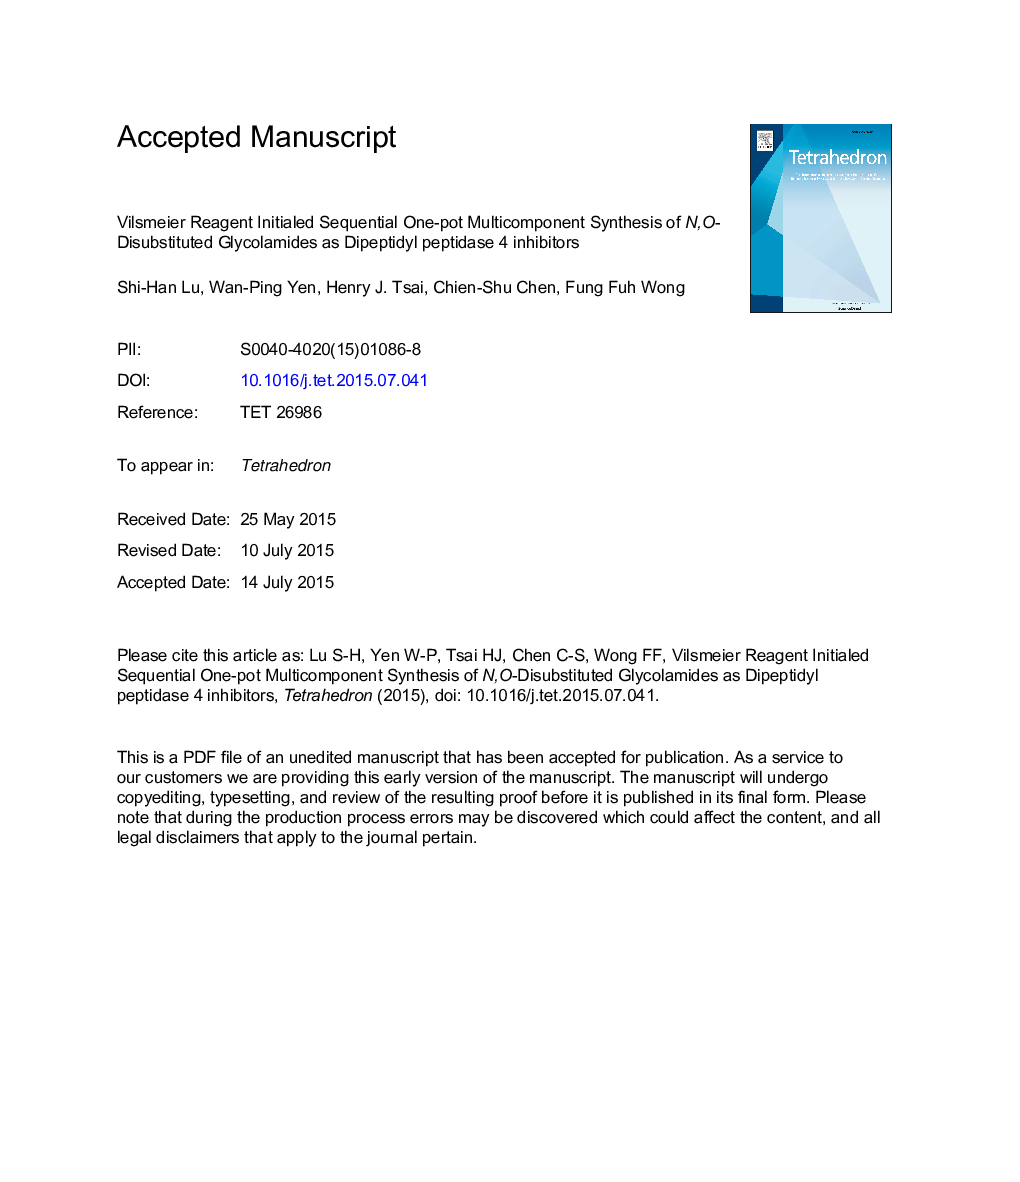 واسیمایر یک واکنشگر یکپارچه چندتایی یکبار گلبول قرمز را به عنوان مهارکننده های دیپپتیدیل پپتیداز 4 